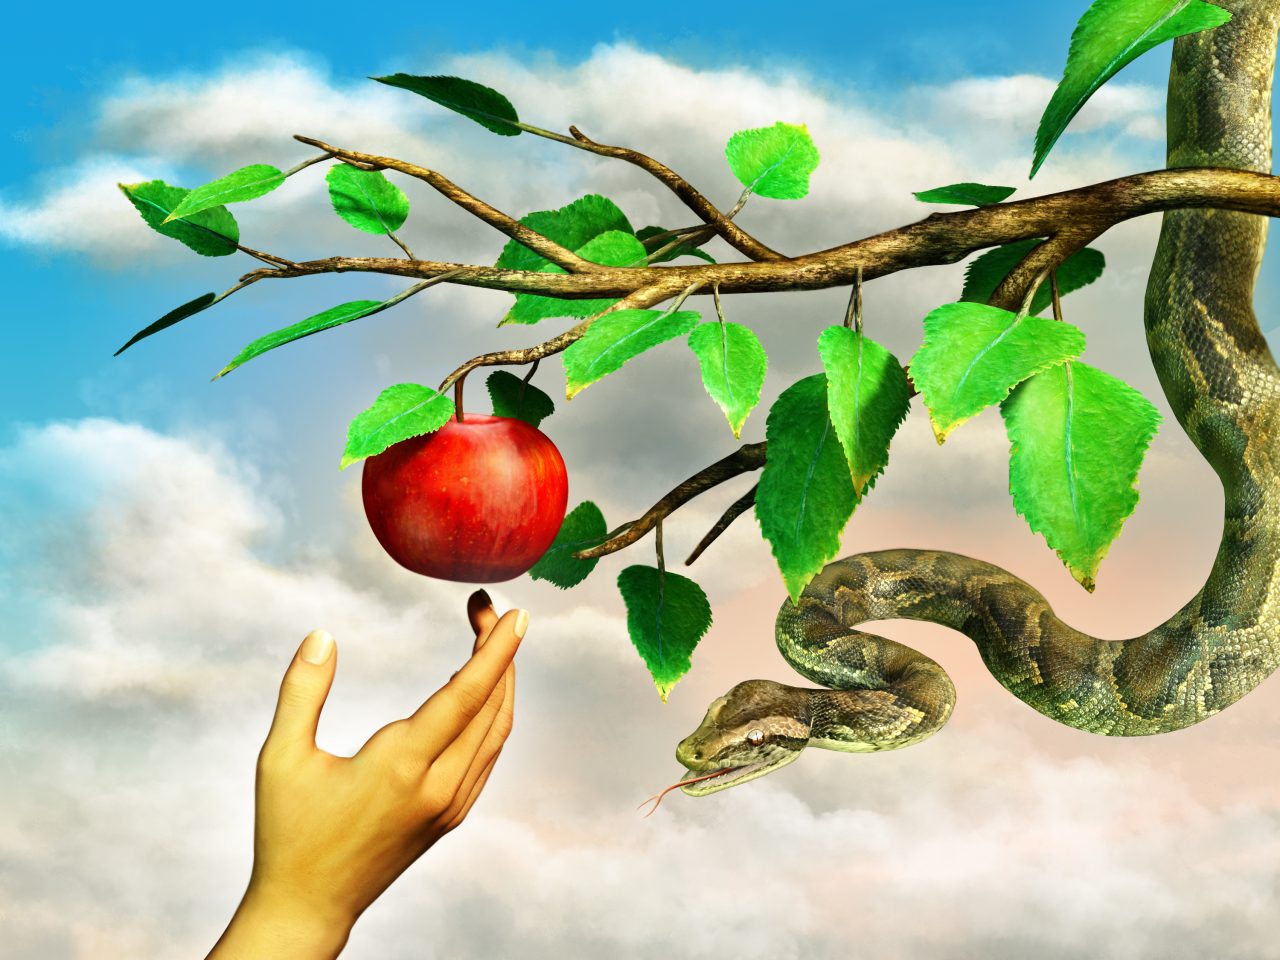 Illustrasjon av et eple som henger i et tre, Eva sin hånd som prøver å få tak i eplet, men det er også en slange i treet. Illustrasjon av bibel fortelling av Adam og Eva.